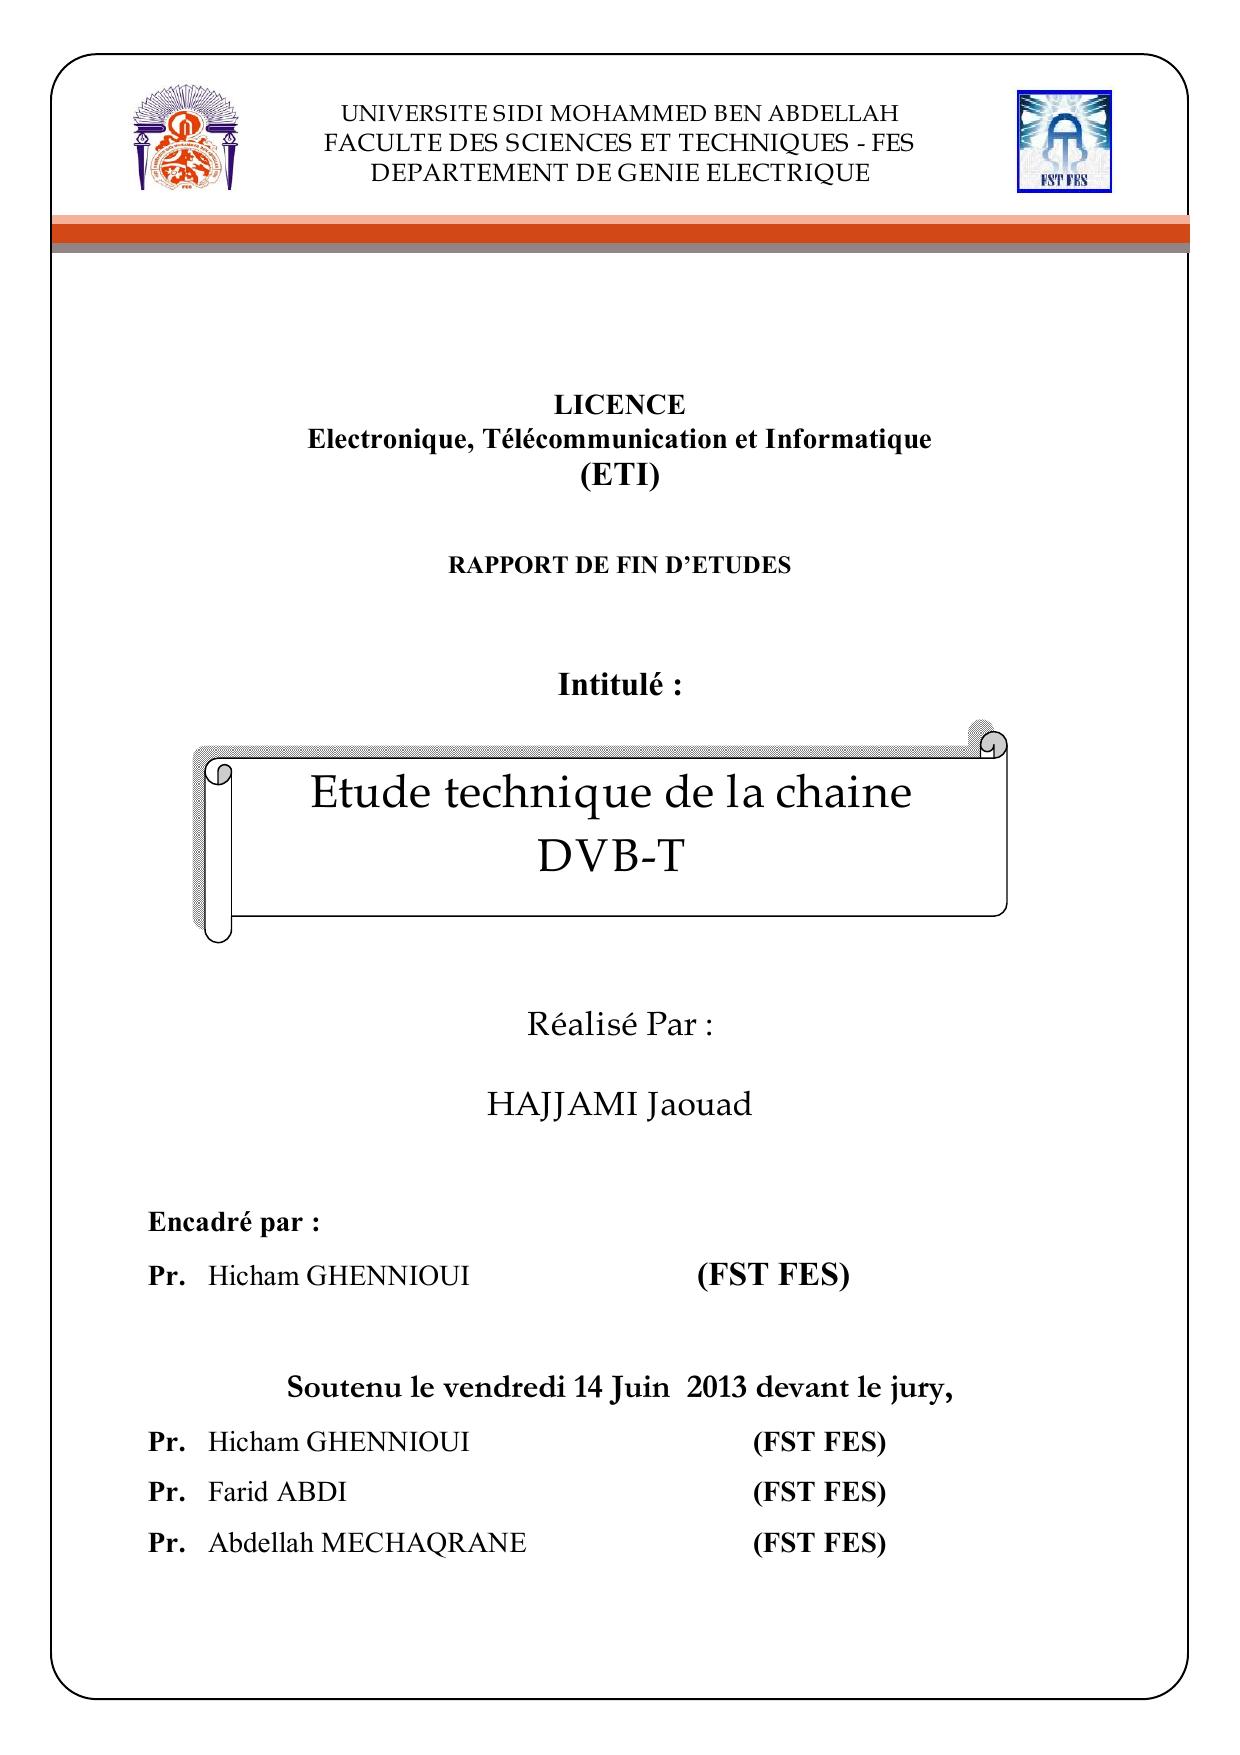 Etude technique de la chaine DVB-T